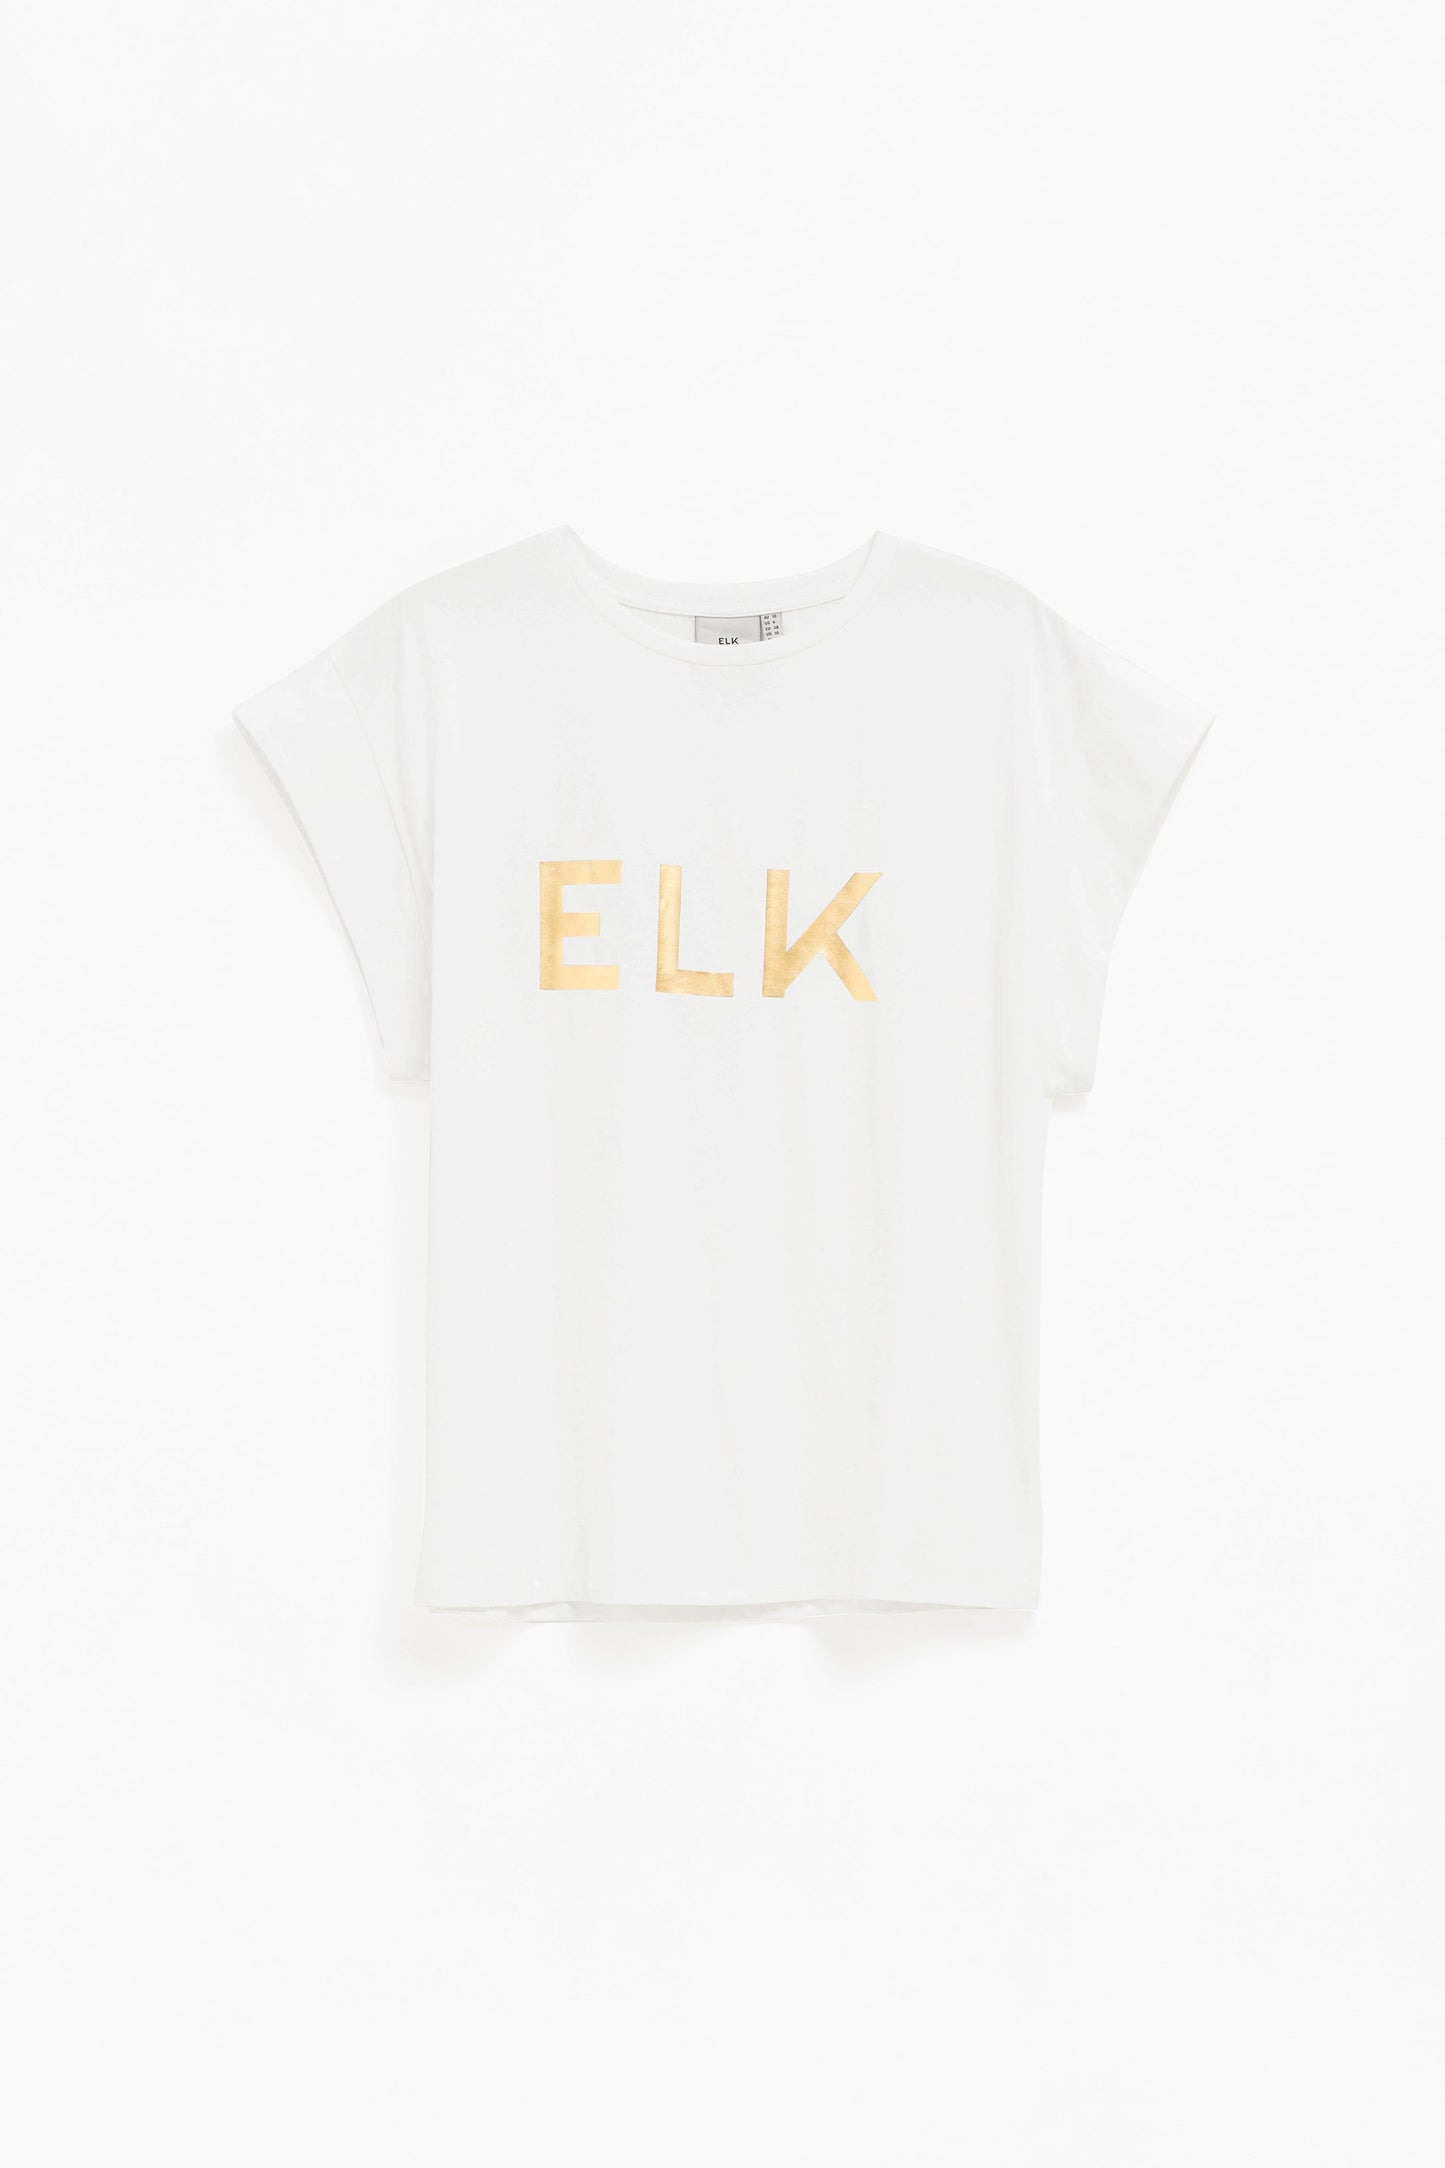 Lange ELK Gold Foil Logo Tee Front | GOLD